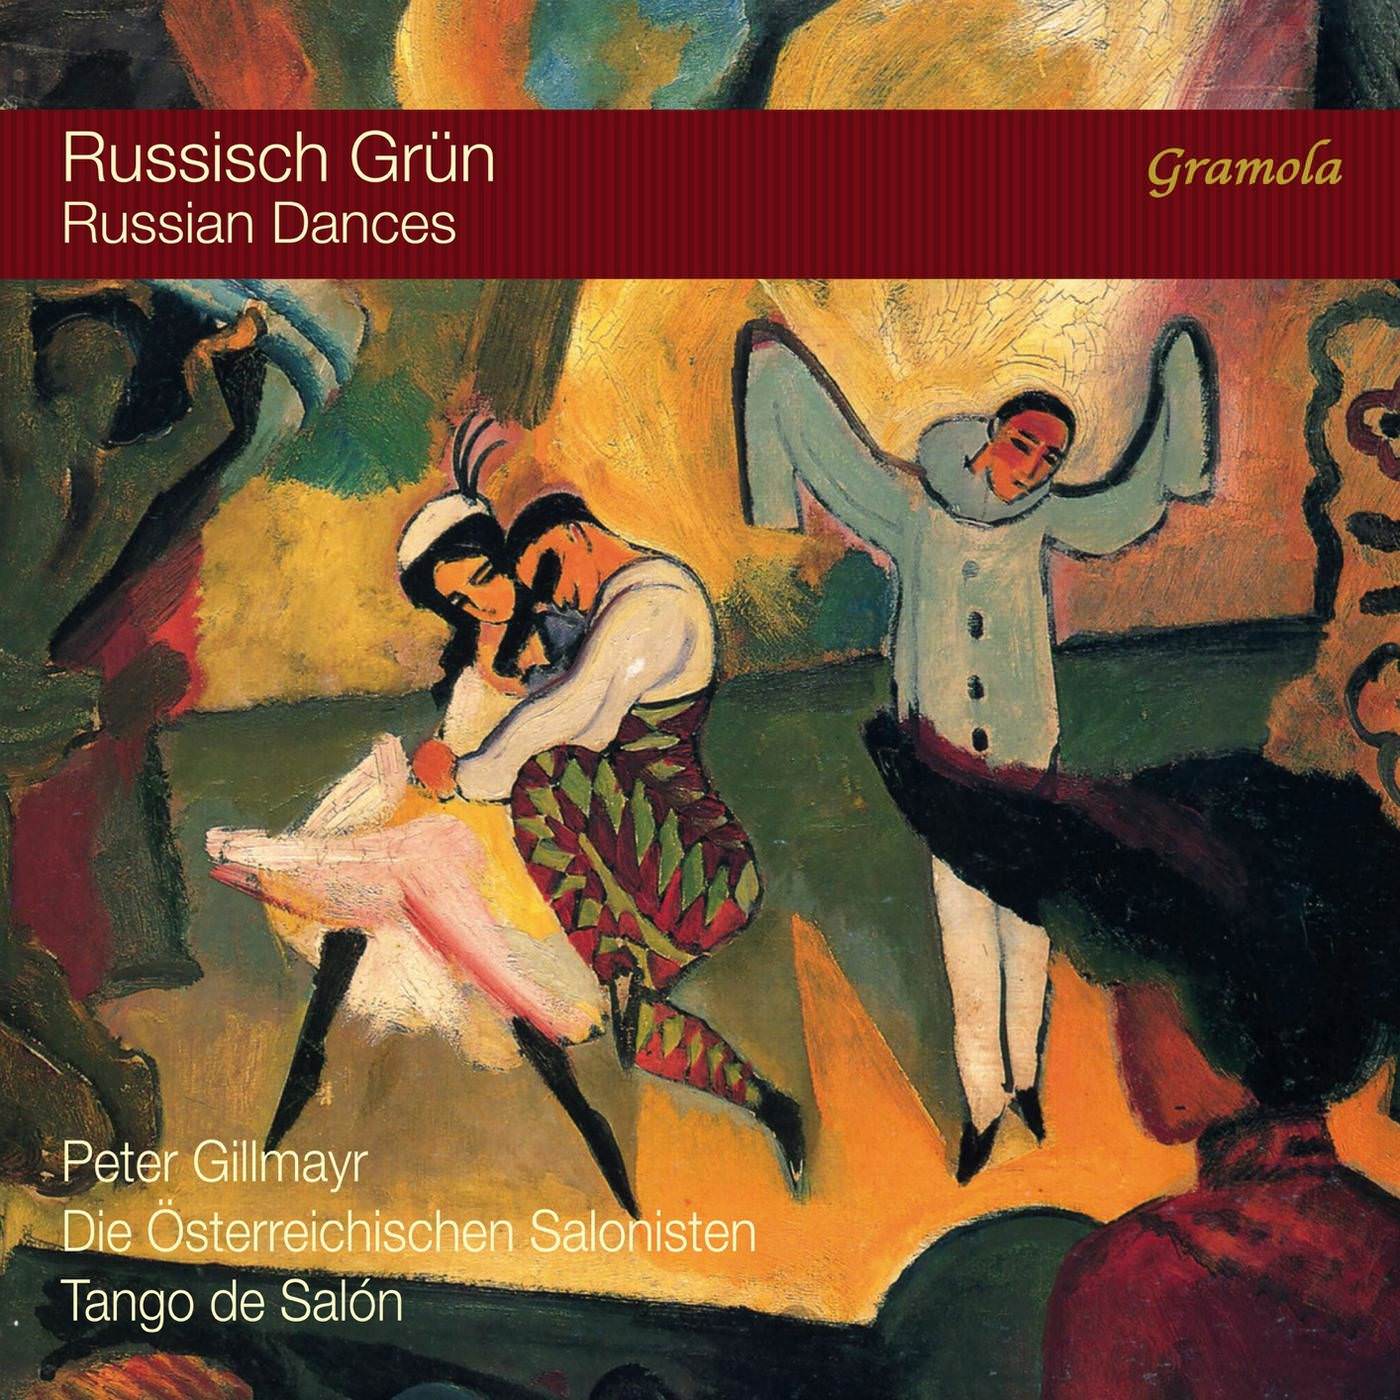 Peter Gillmayr, Die Osterreichischen Salonisten & Tango de Salon - Russian Dances (2018) [FLAC 24bit/96kHz]